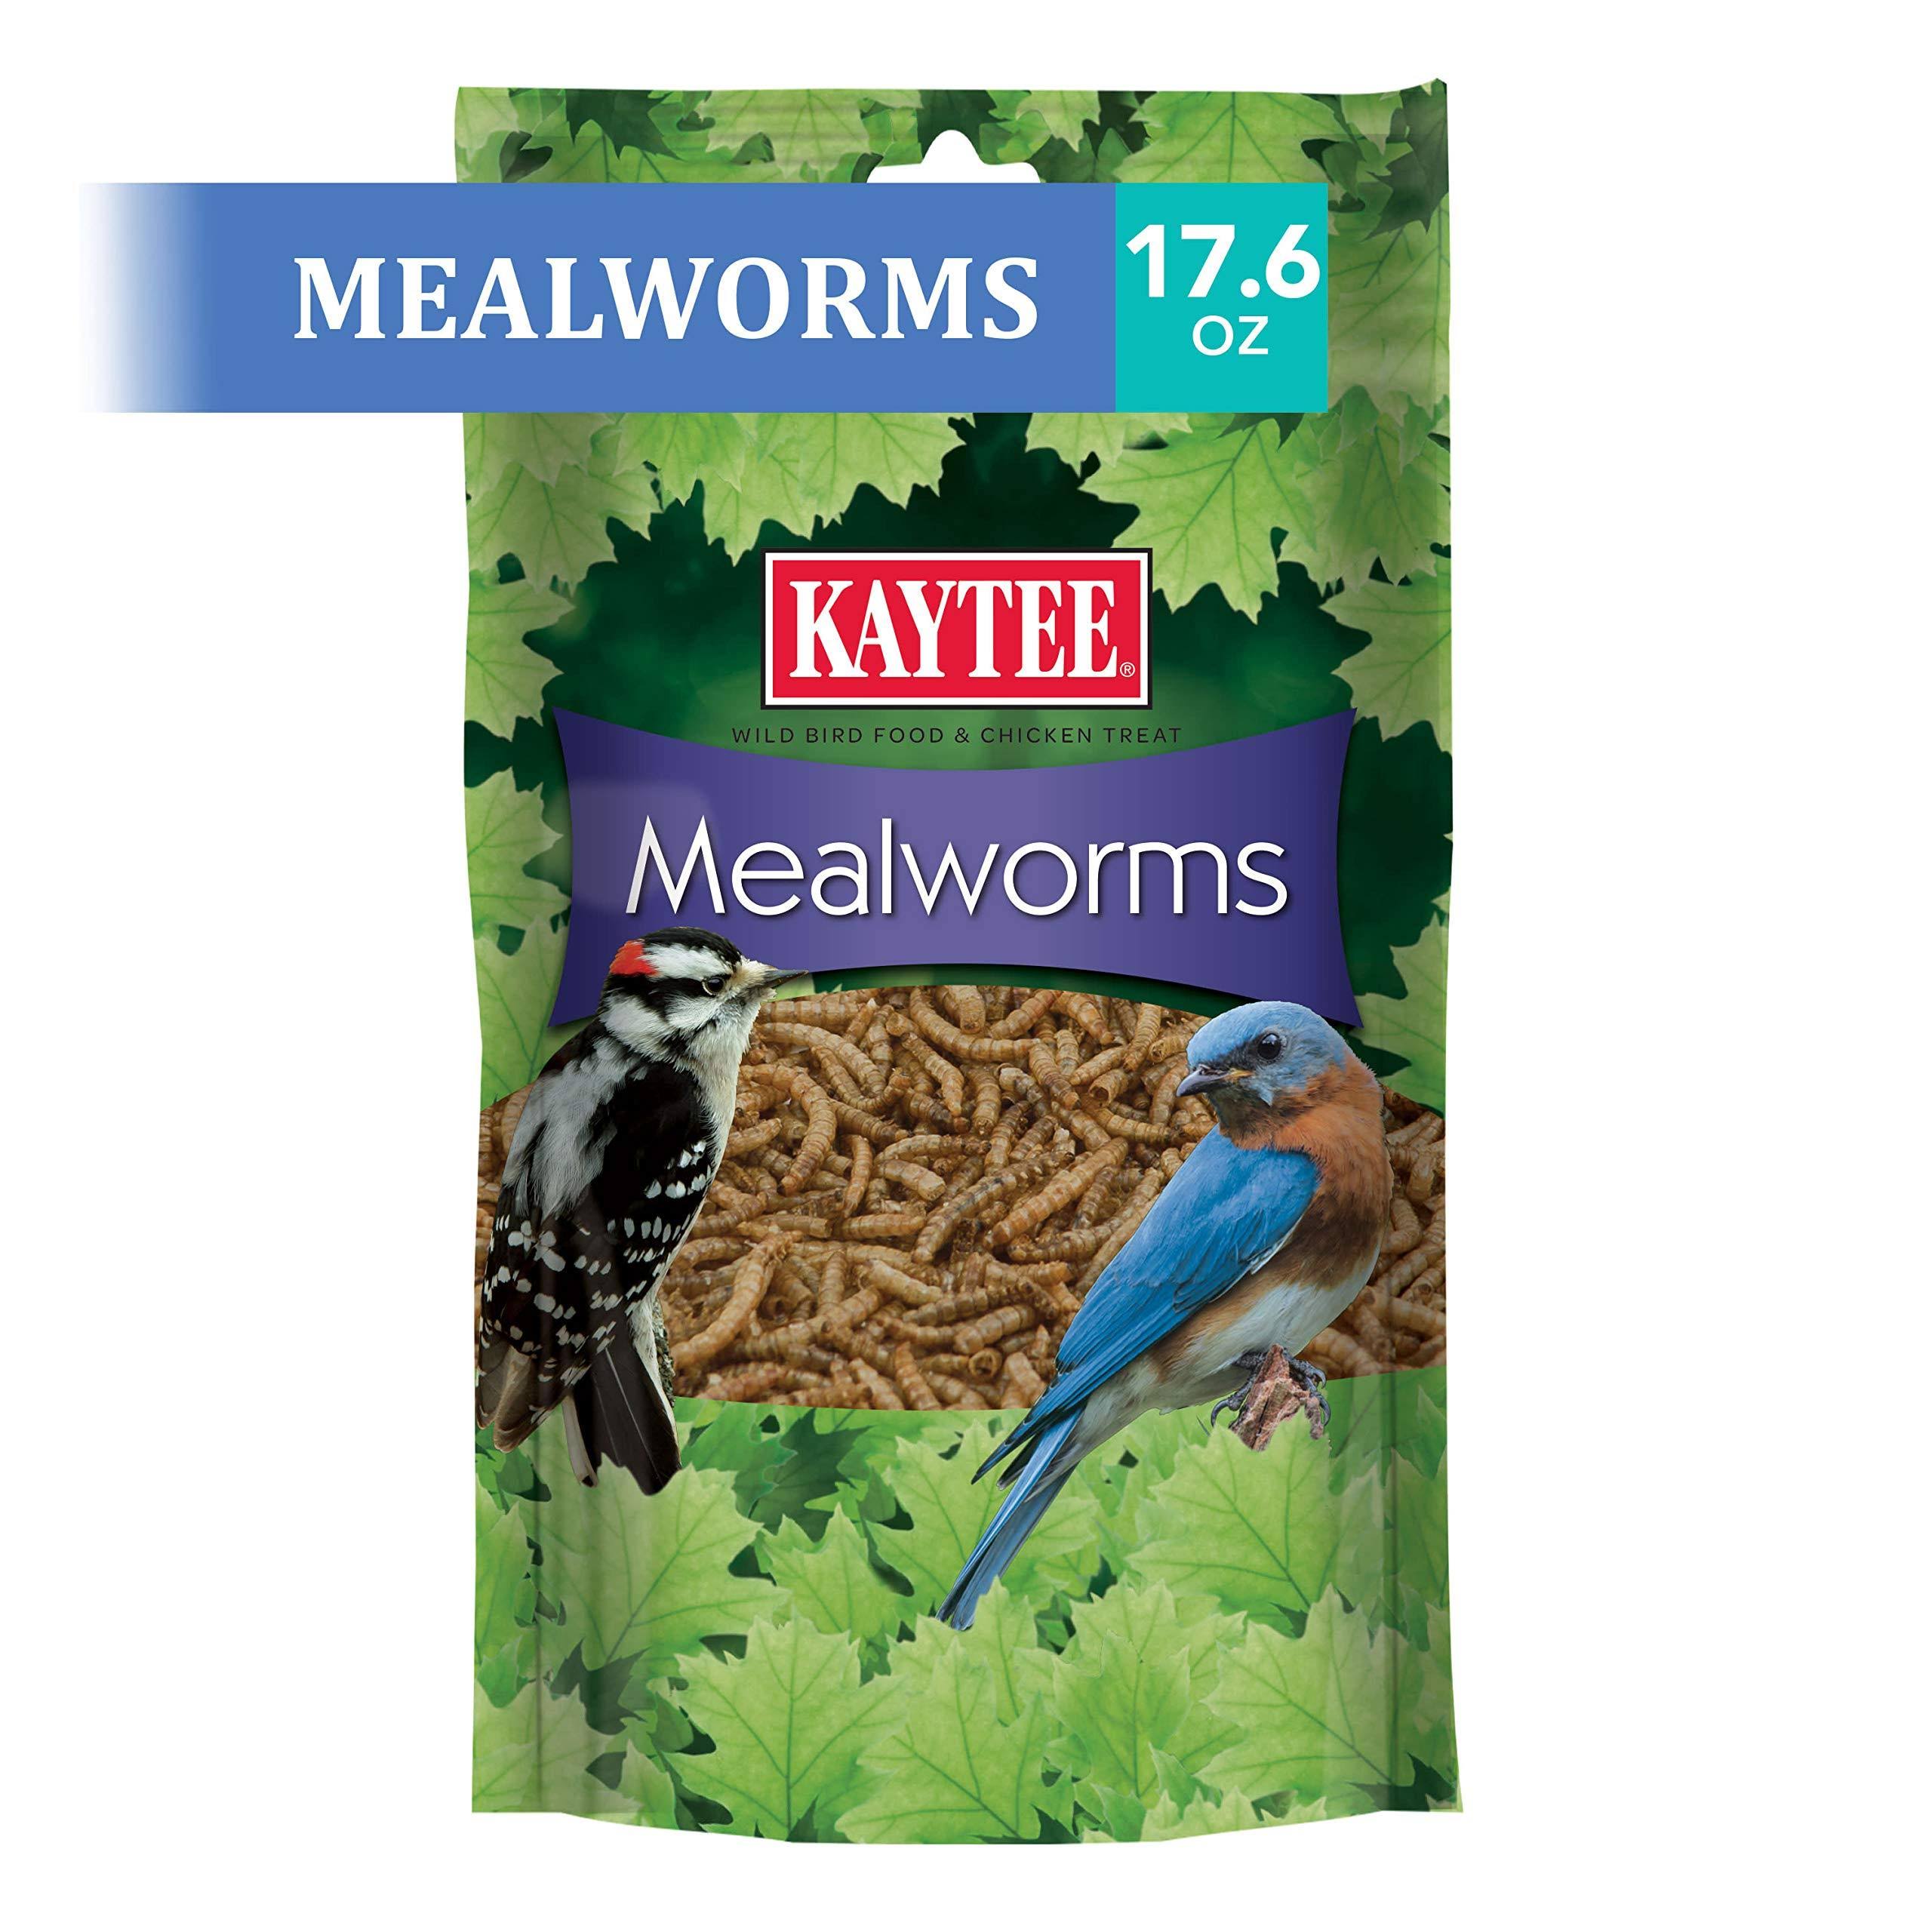 Kaytee Mealworms Wild Bird Feed - 17.6oz